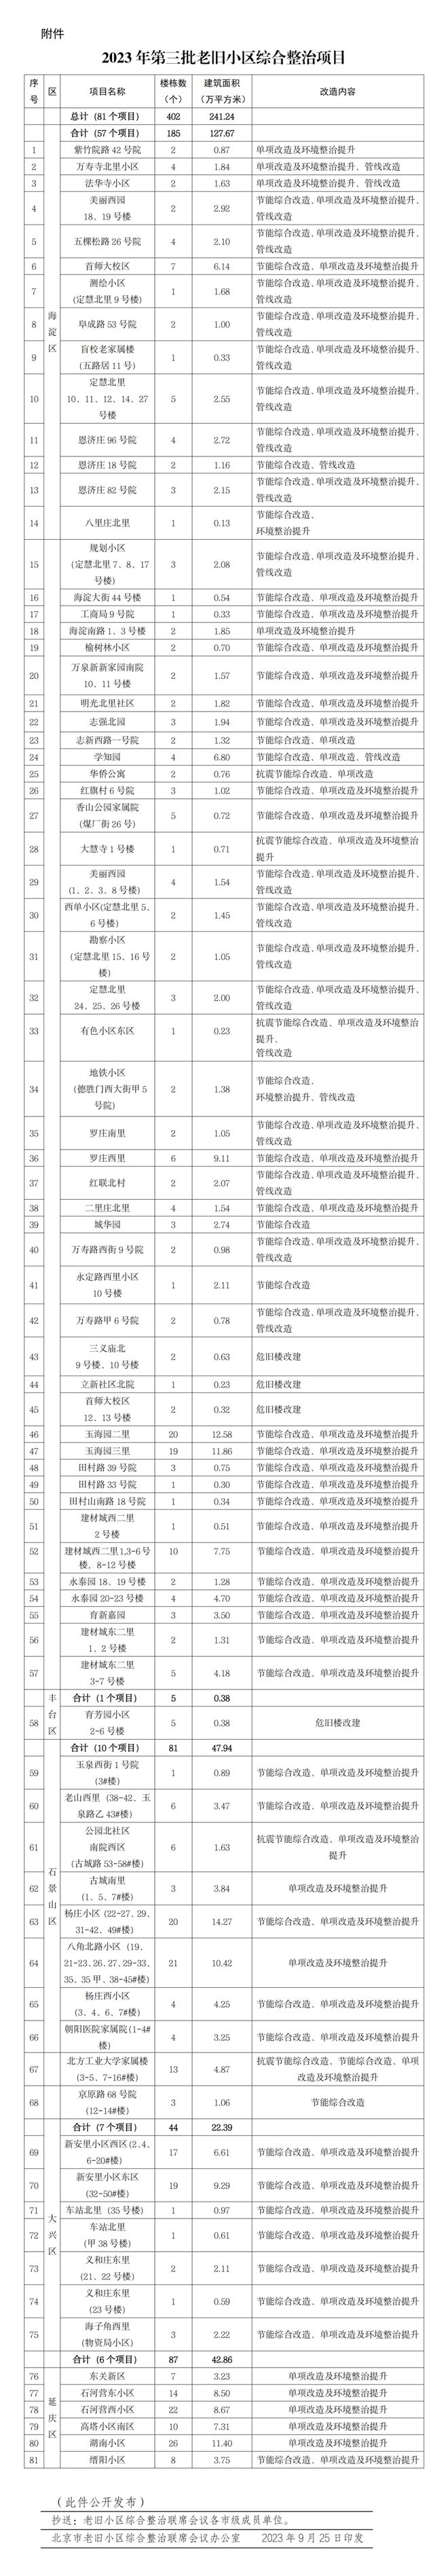 北京发布第三批老旧小区改造项目名单，涉及改造楼栋402栋